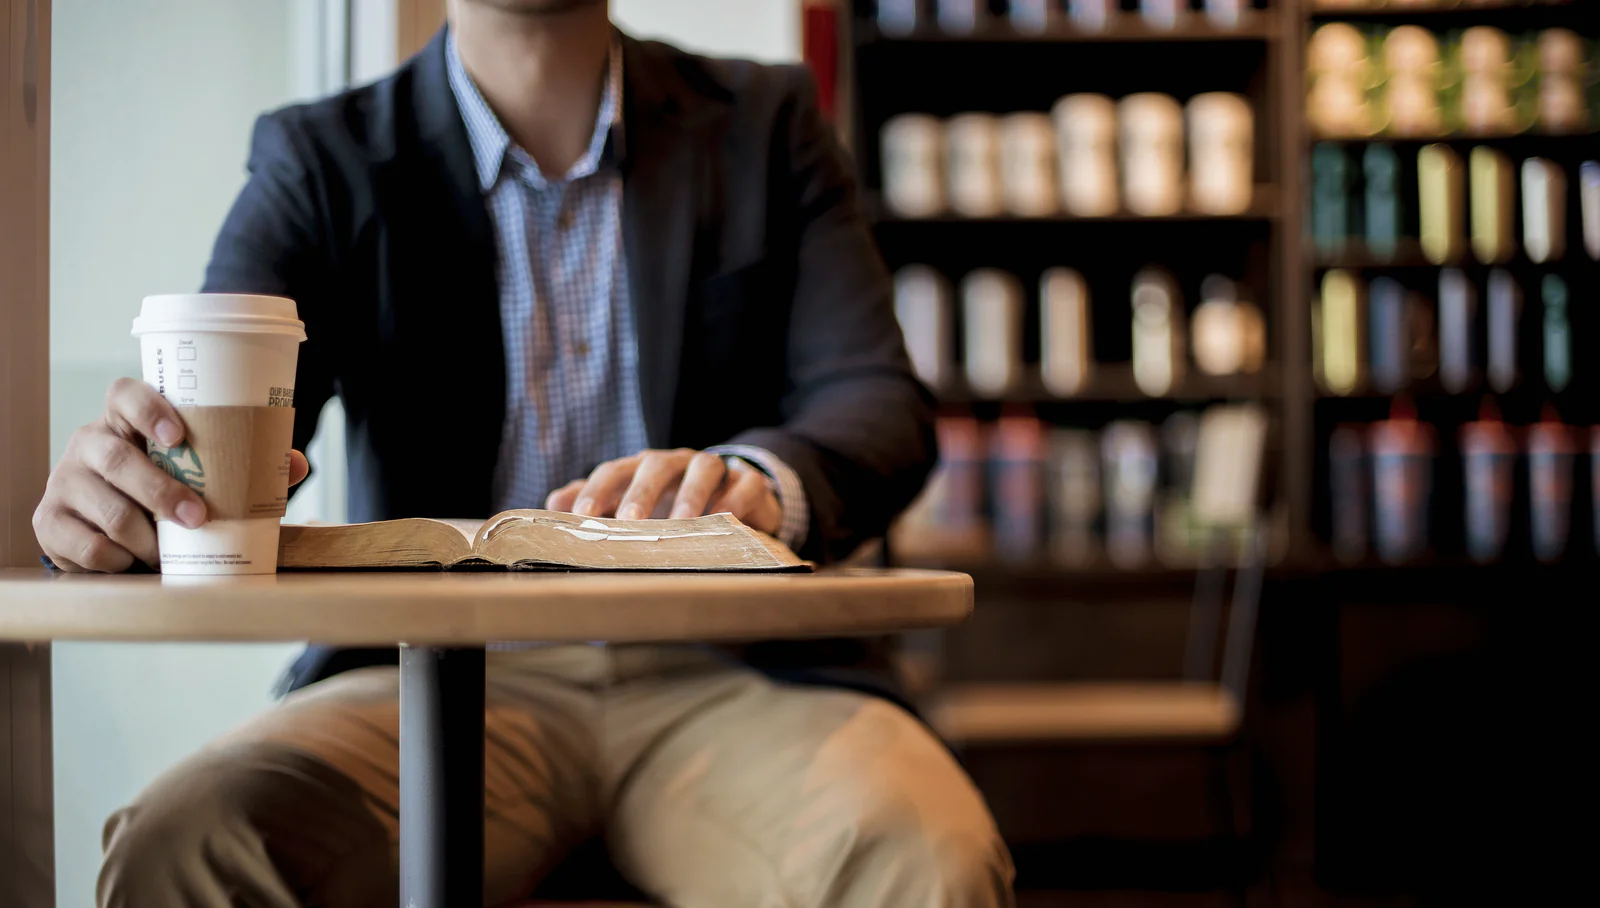 مردی در حال خوردن قهوه و خواندن کتاب در کافه